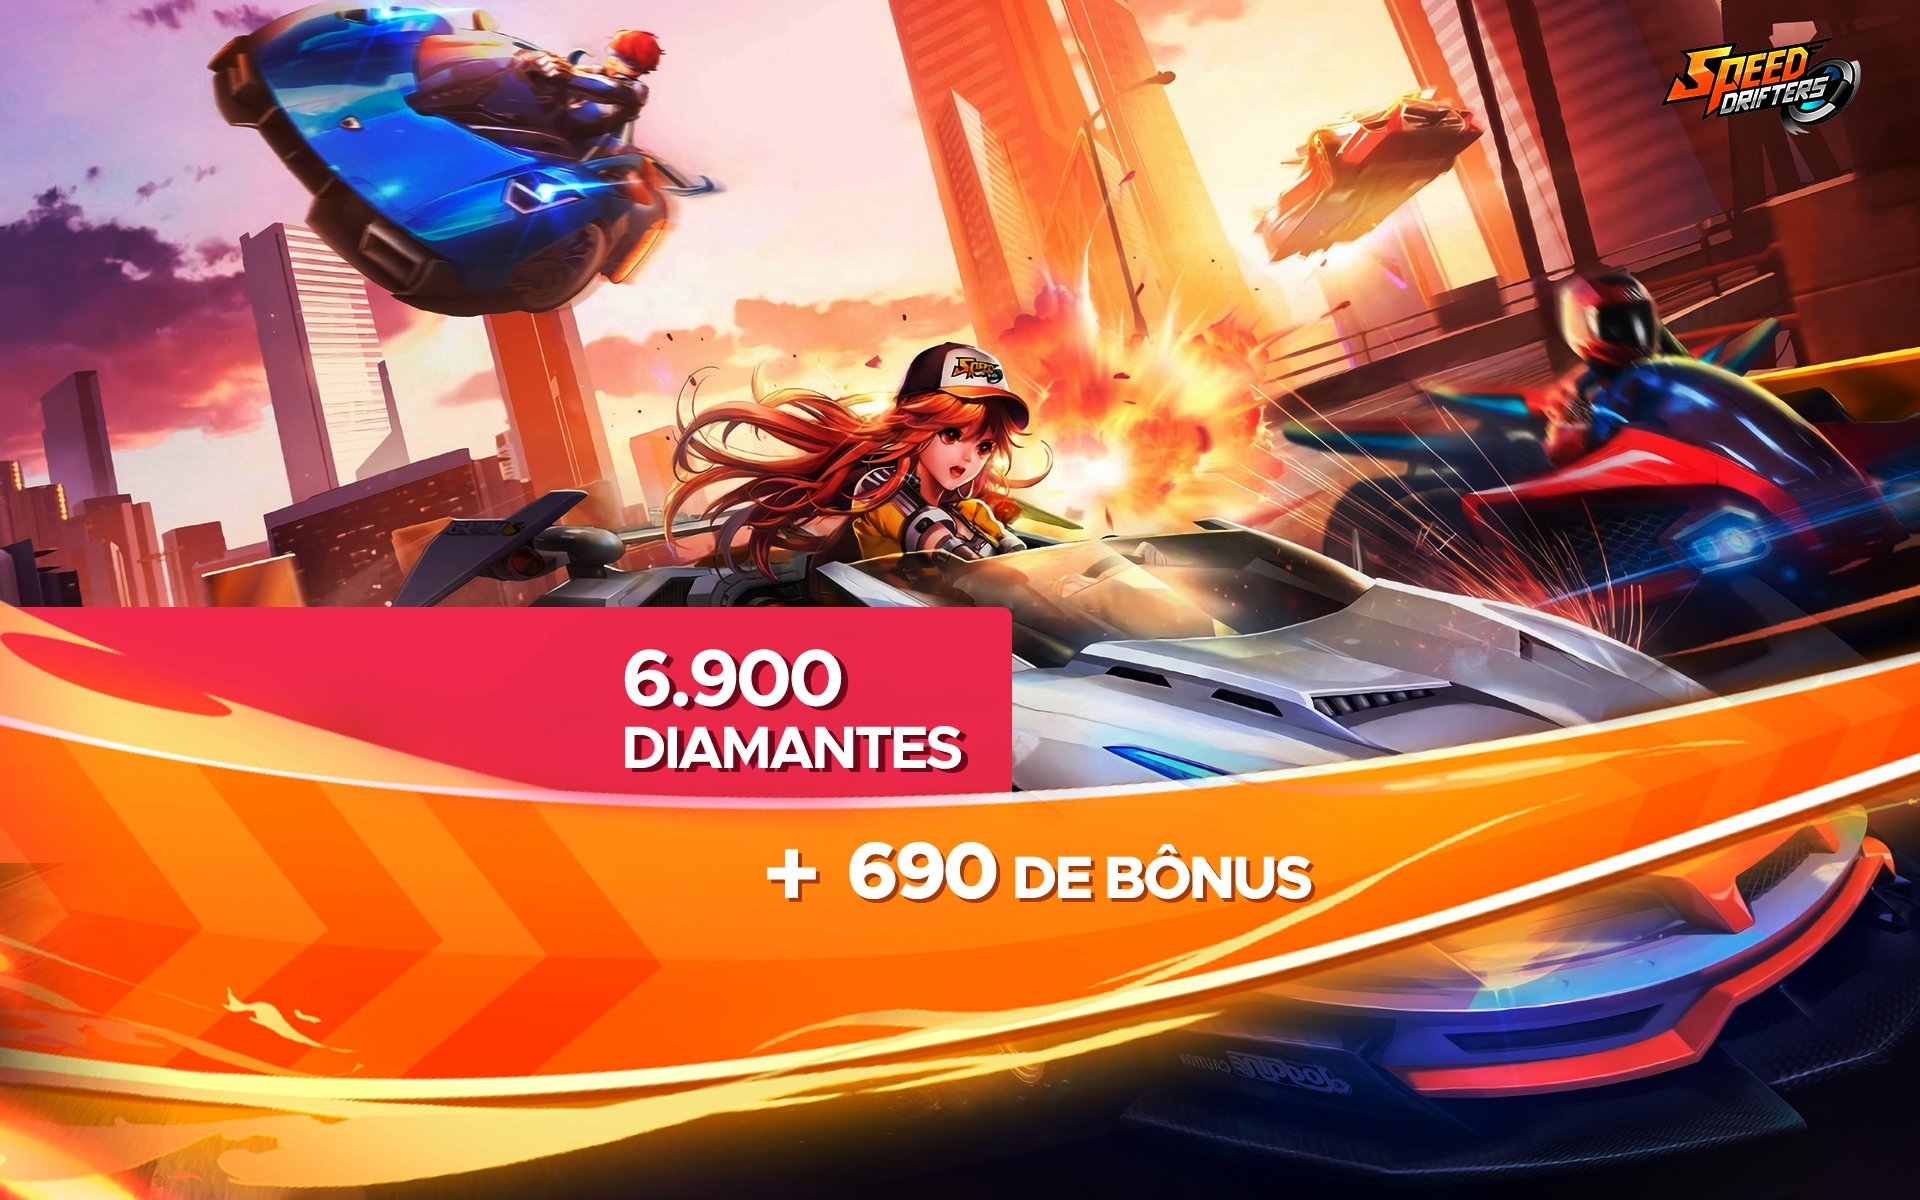 Speed Drifters - 6.900 Diamantes + 690 de Bônus cover